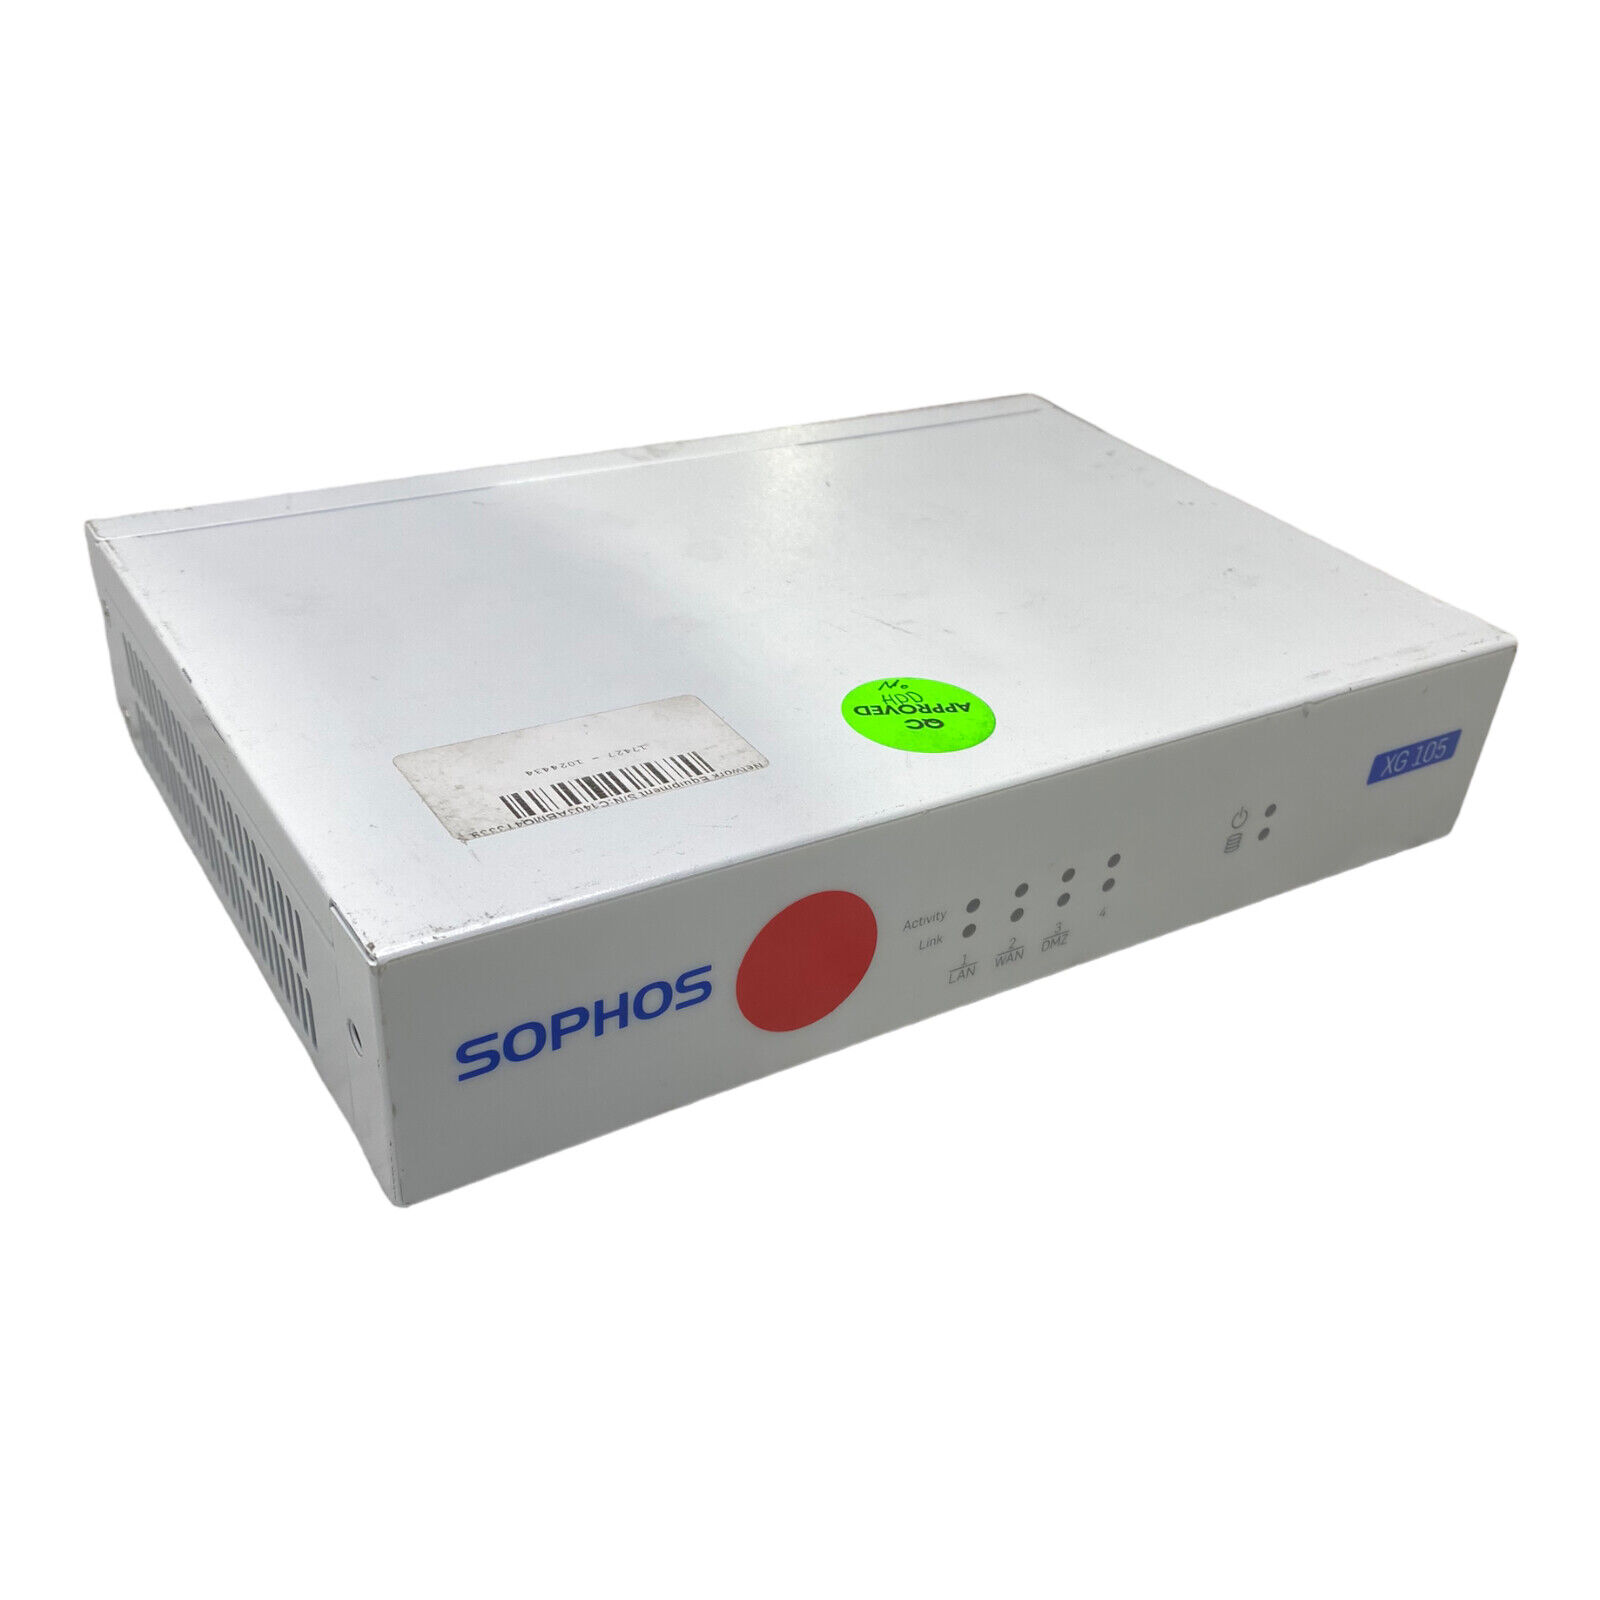 Sophos XG 105 Rev 2 VPN Firewall Appliance